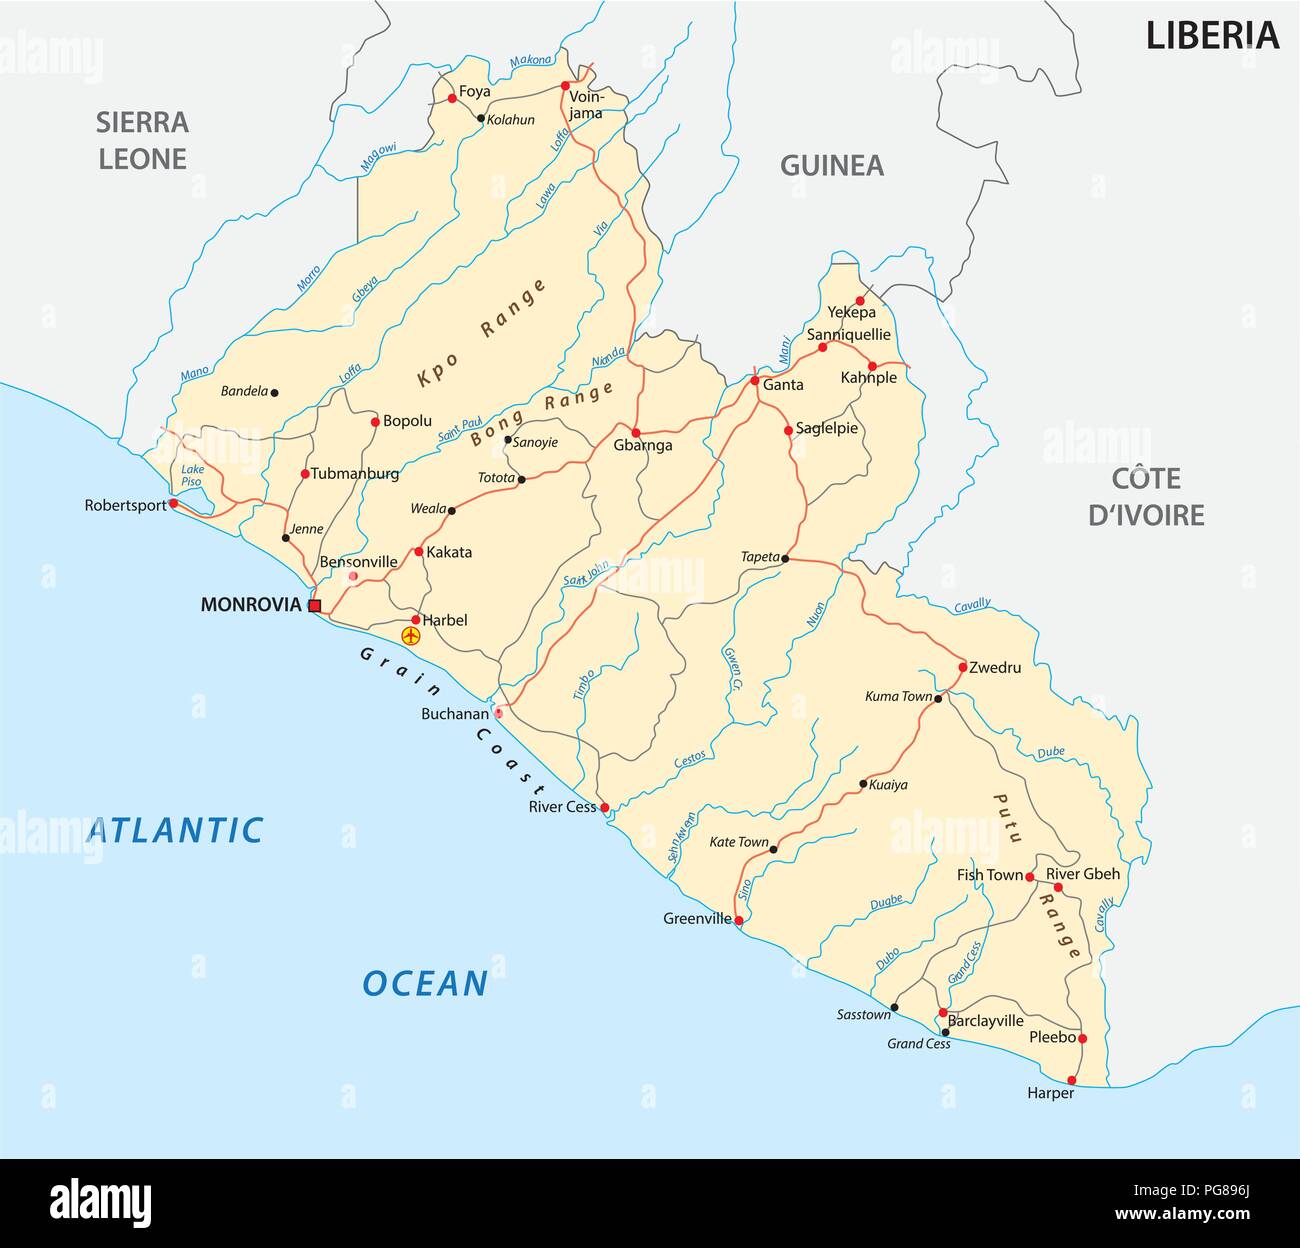 Repubblica di Liberia road mappa vettoriale. Illustrazione Vettoriale